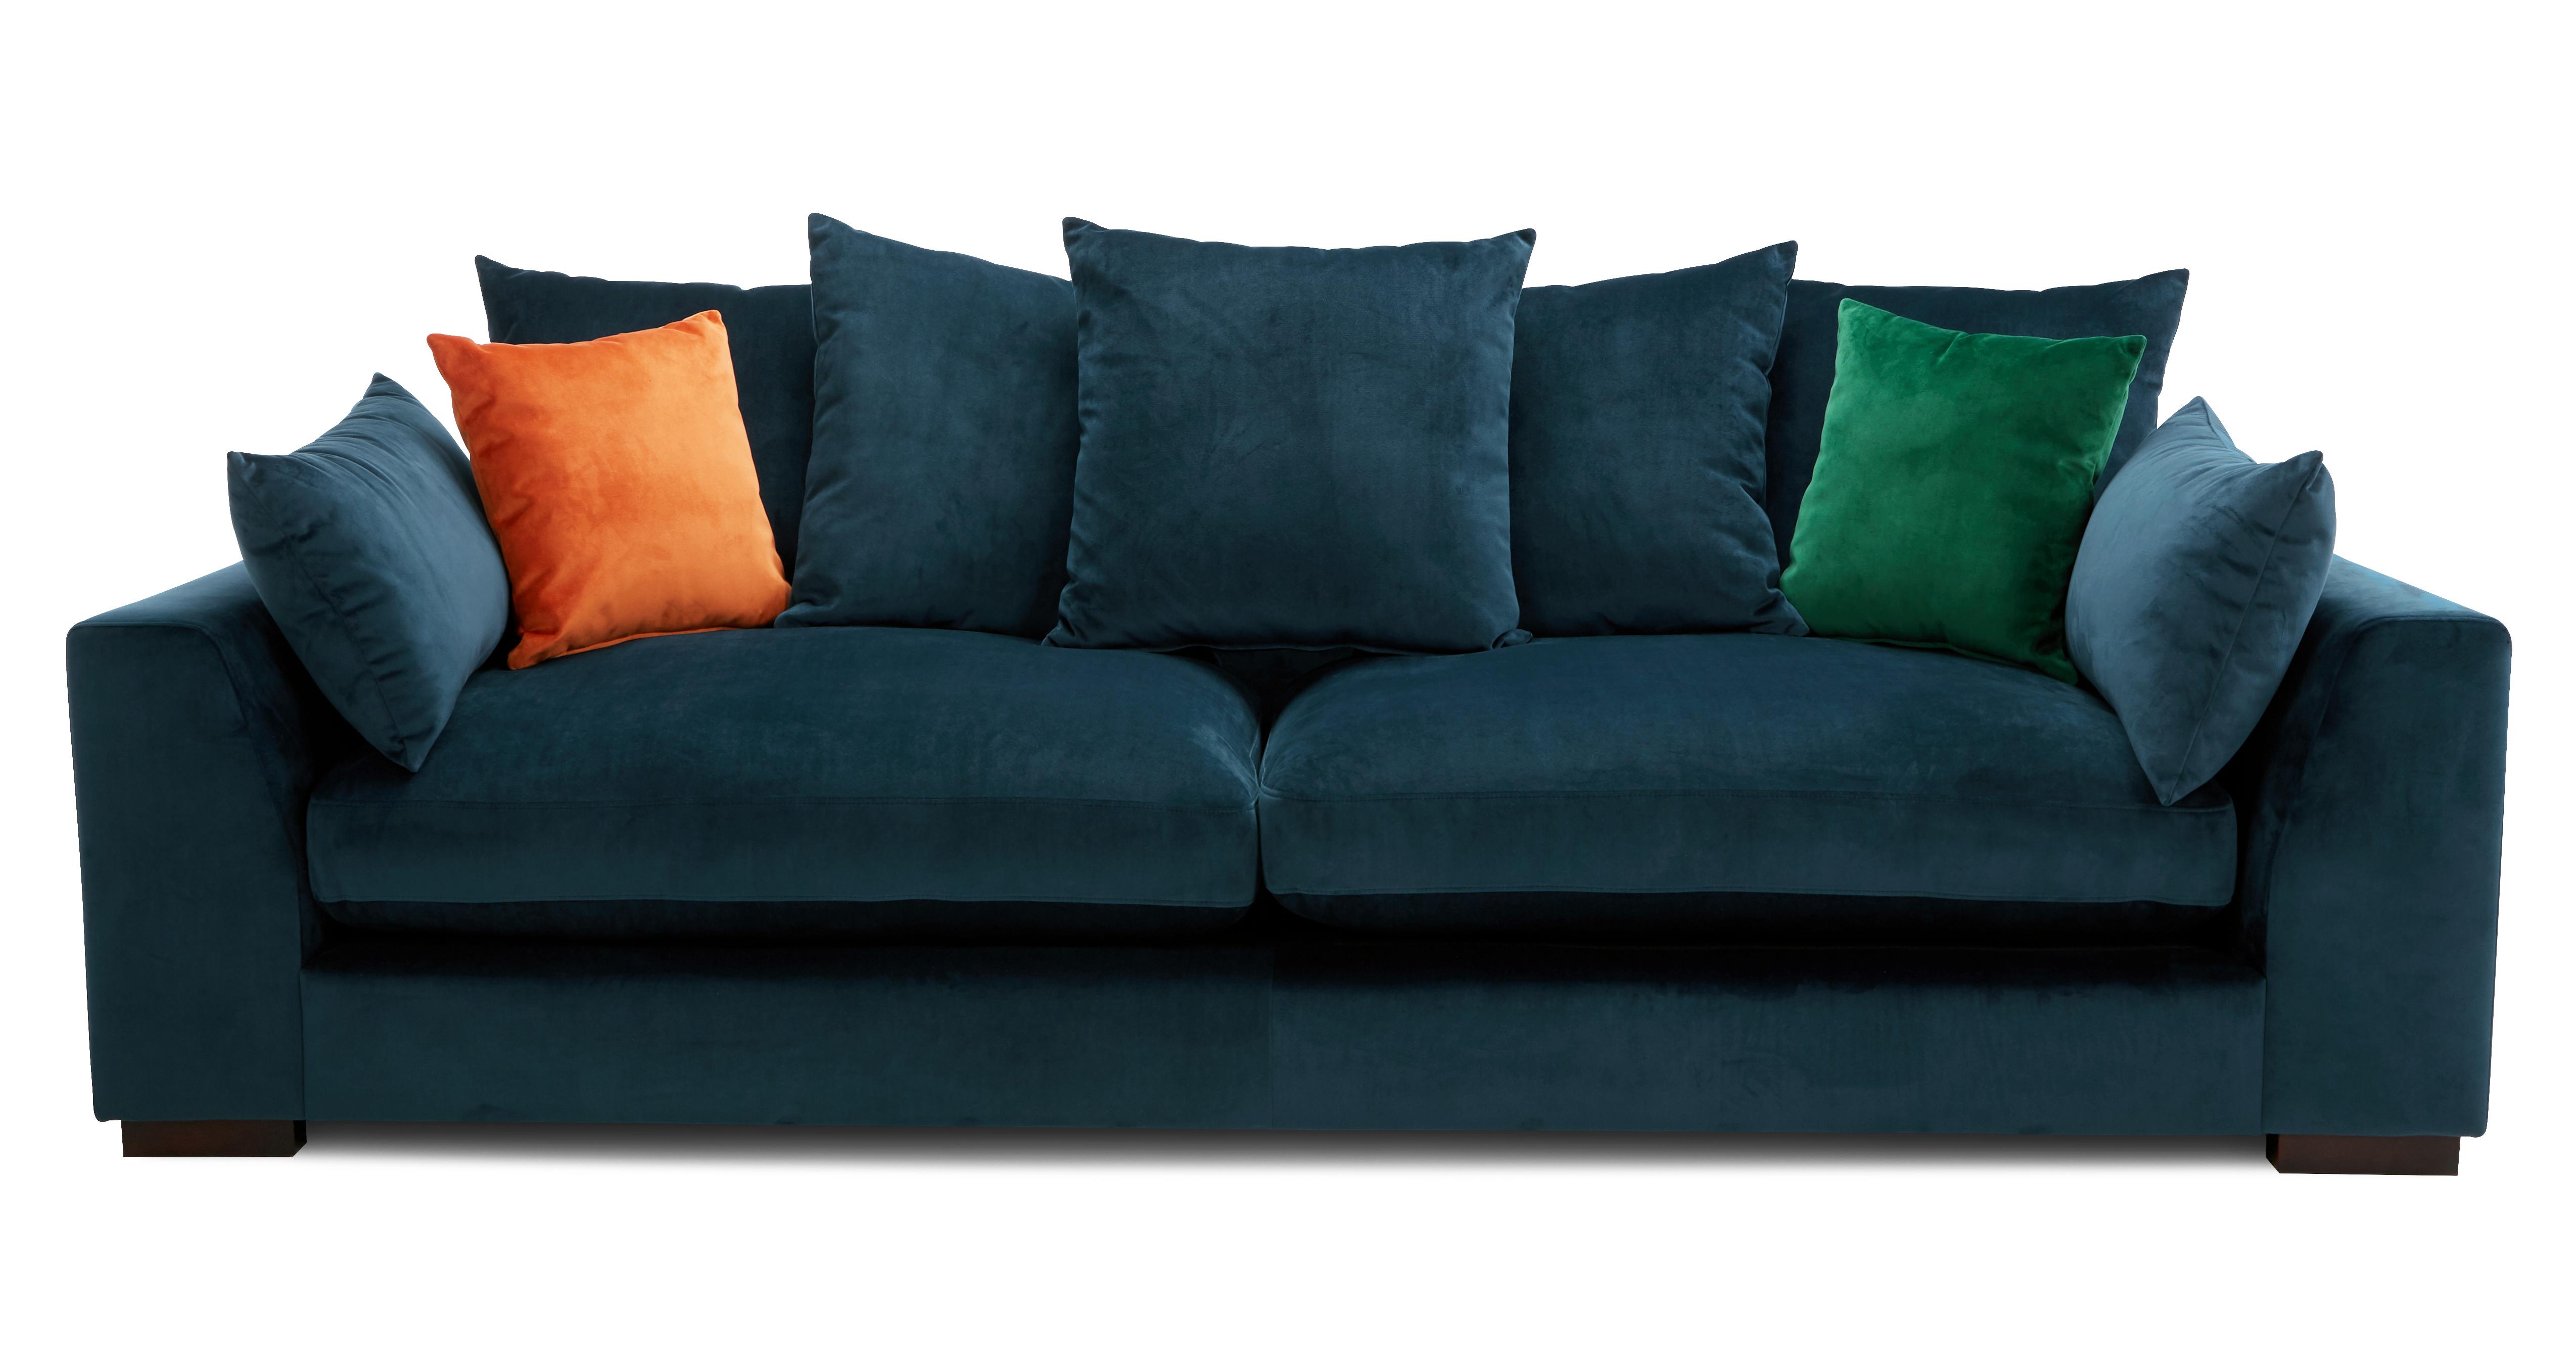 plush sofa bed price